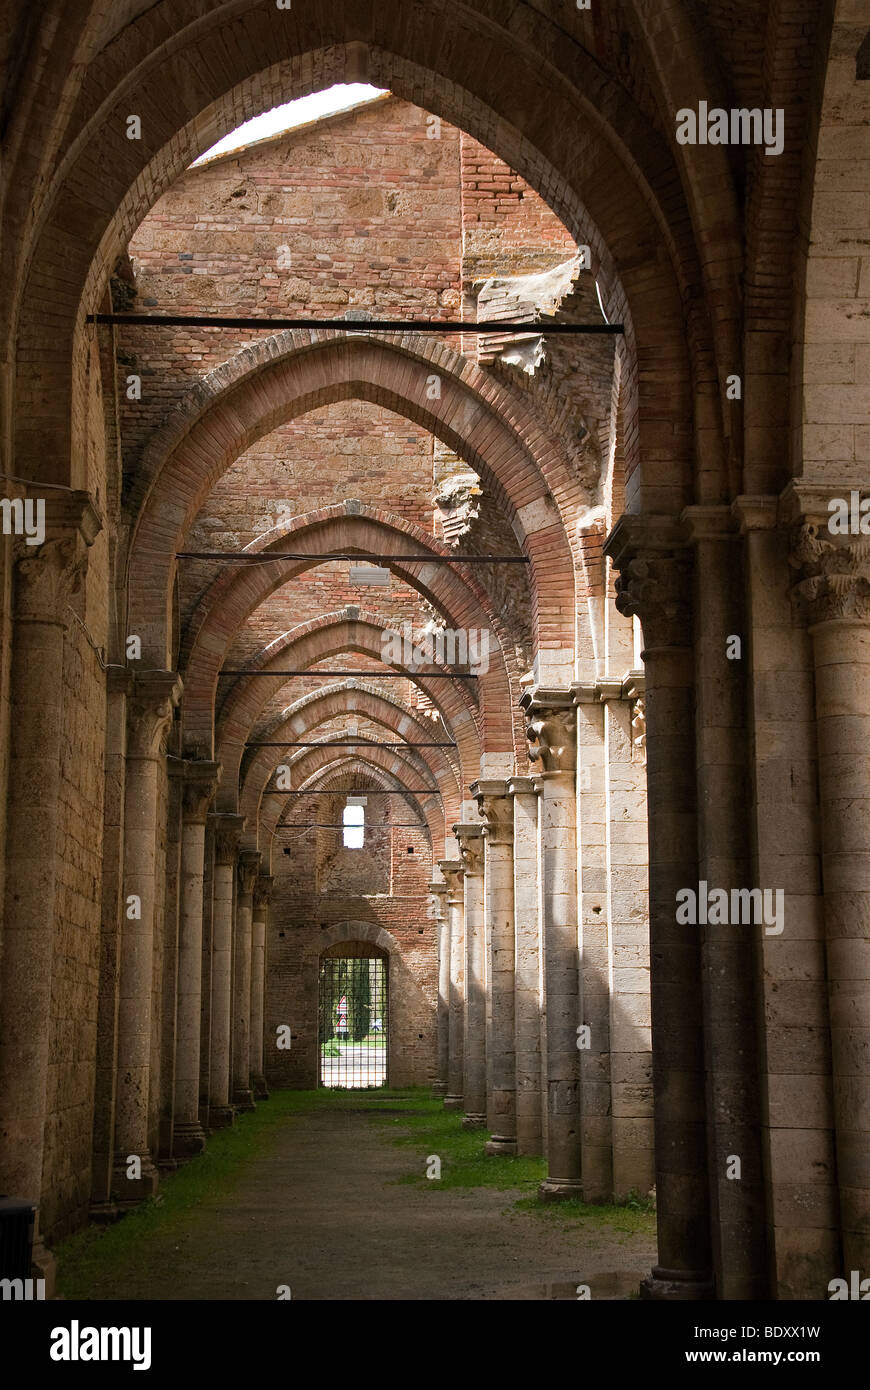 San Galgano im 12. Jahrhundert Abtei gegründet von Französisch Zisterzienser-Mönche in der Nähe von Siena, jetzt mit dem Dach eingestürzt. Stockfoto